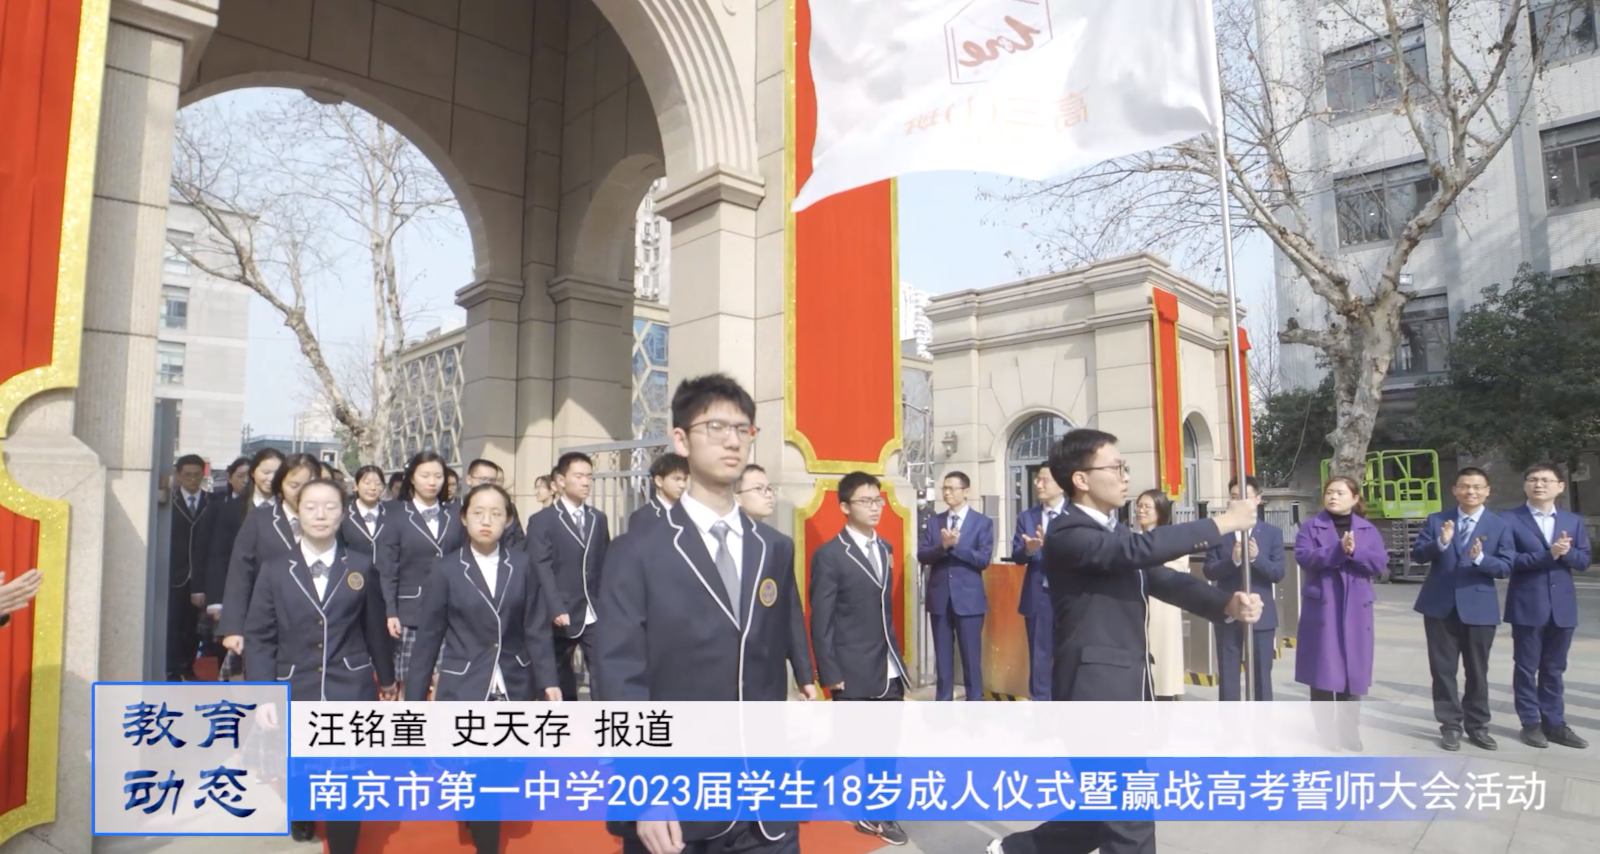 相信自己——南京市第一中学2023届学生18岁成人仪式暨赢战高考誓师大会活动